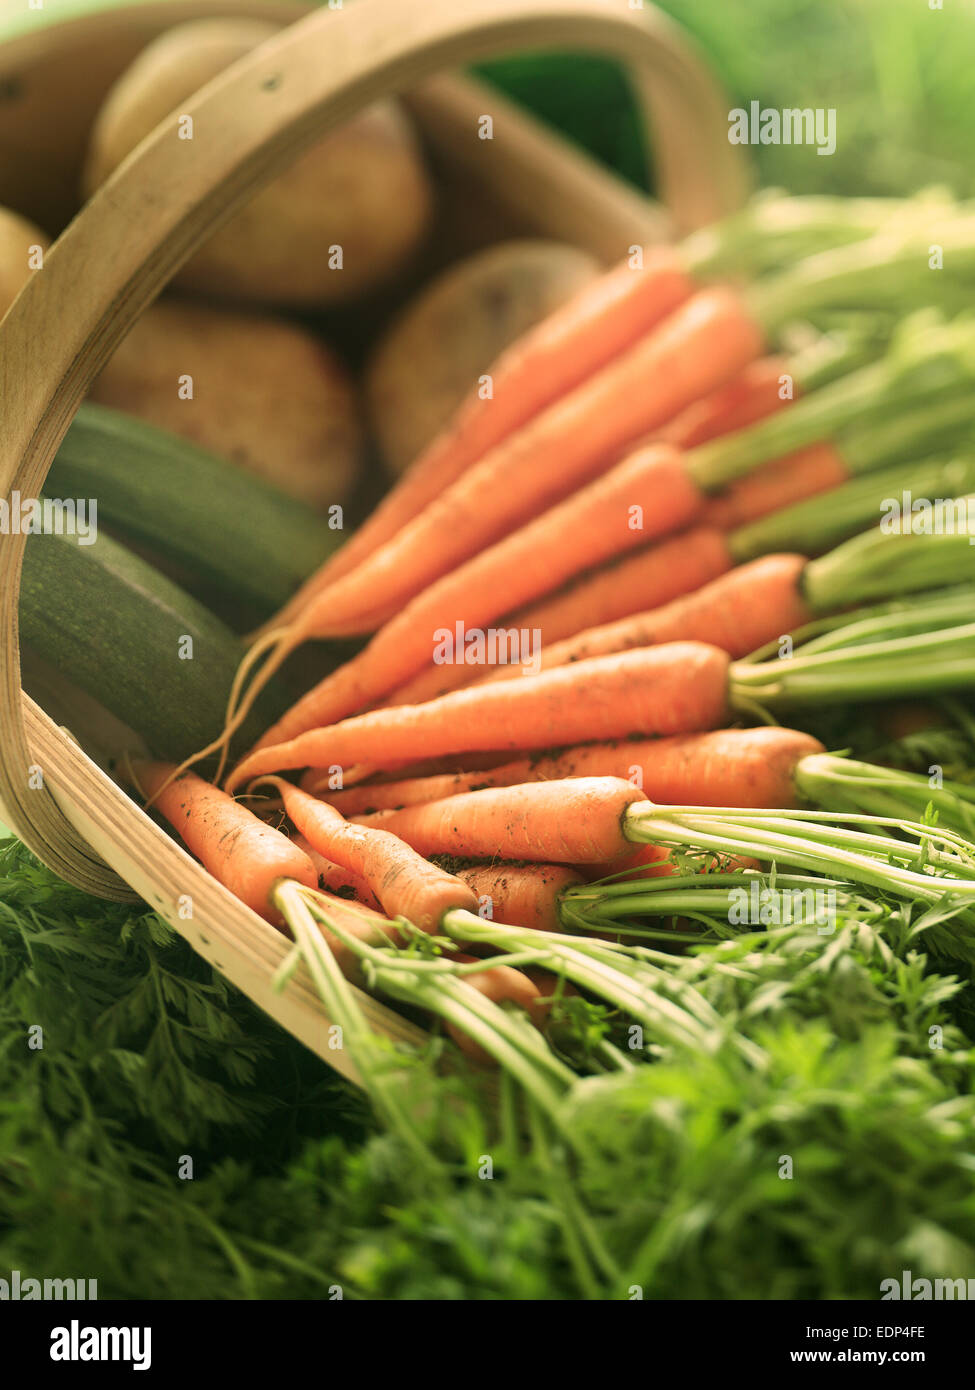 Eine geringe Schärfentiefe Feld Schuss frisch gegrabene Gemüse - Karotten, Kartoffeln und Zucchini Stockfoto